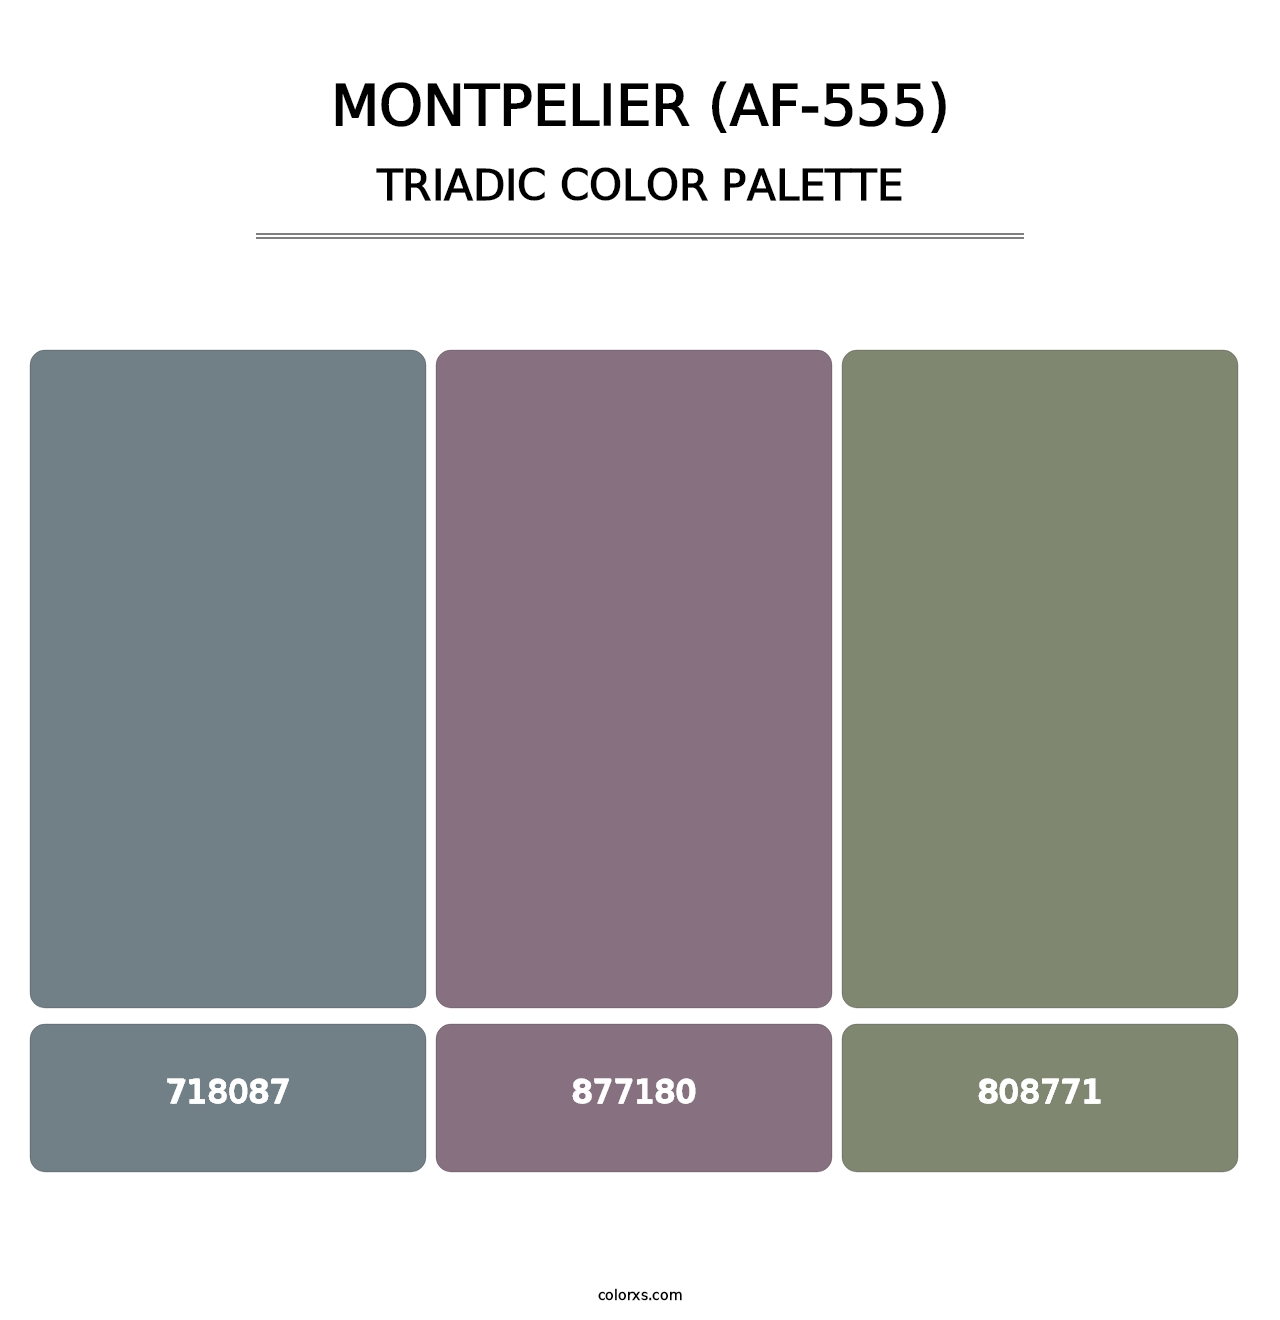 Montpelier (AF-555) - Triadic Color Palette